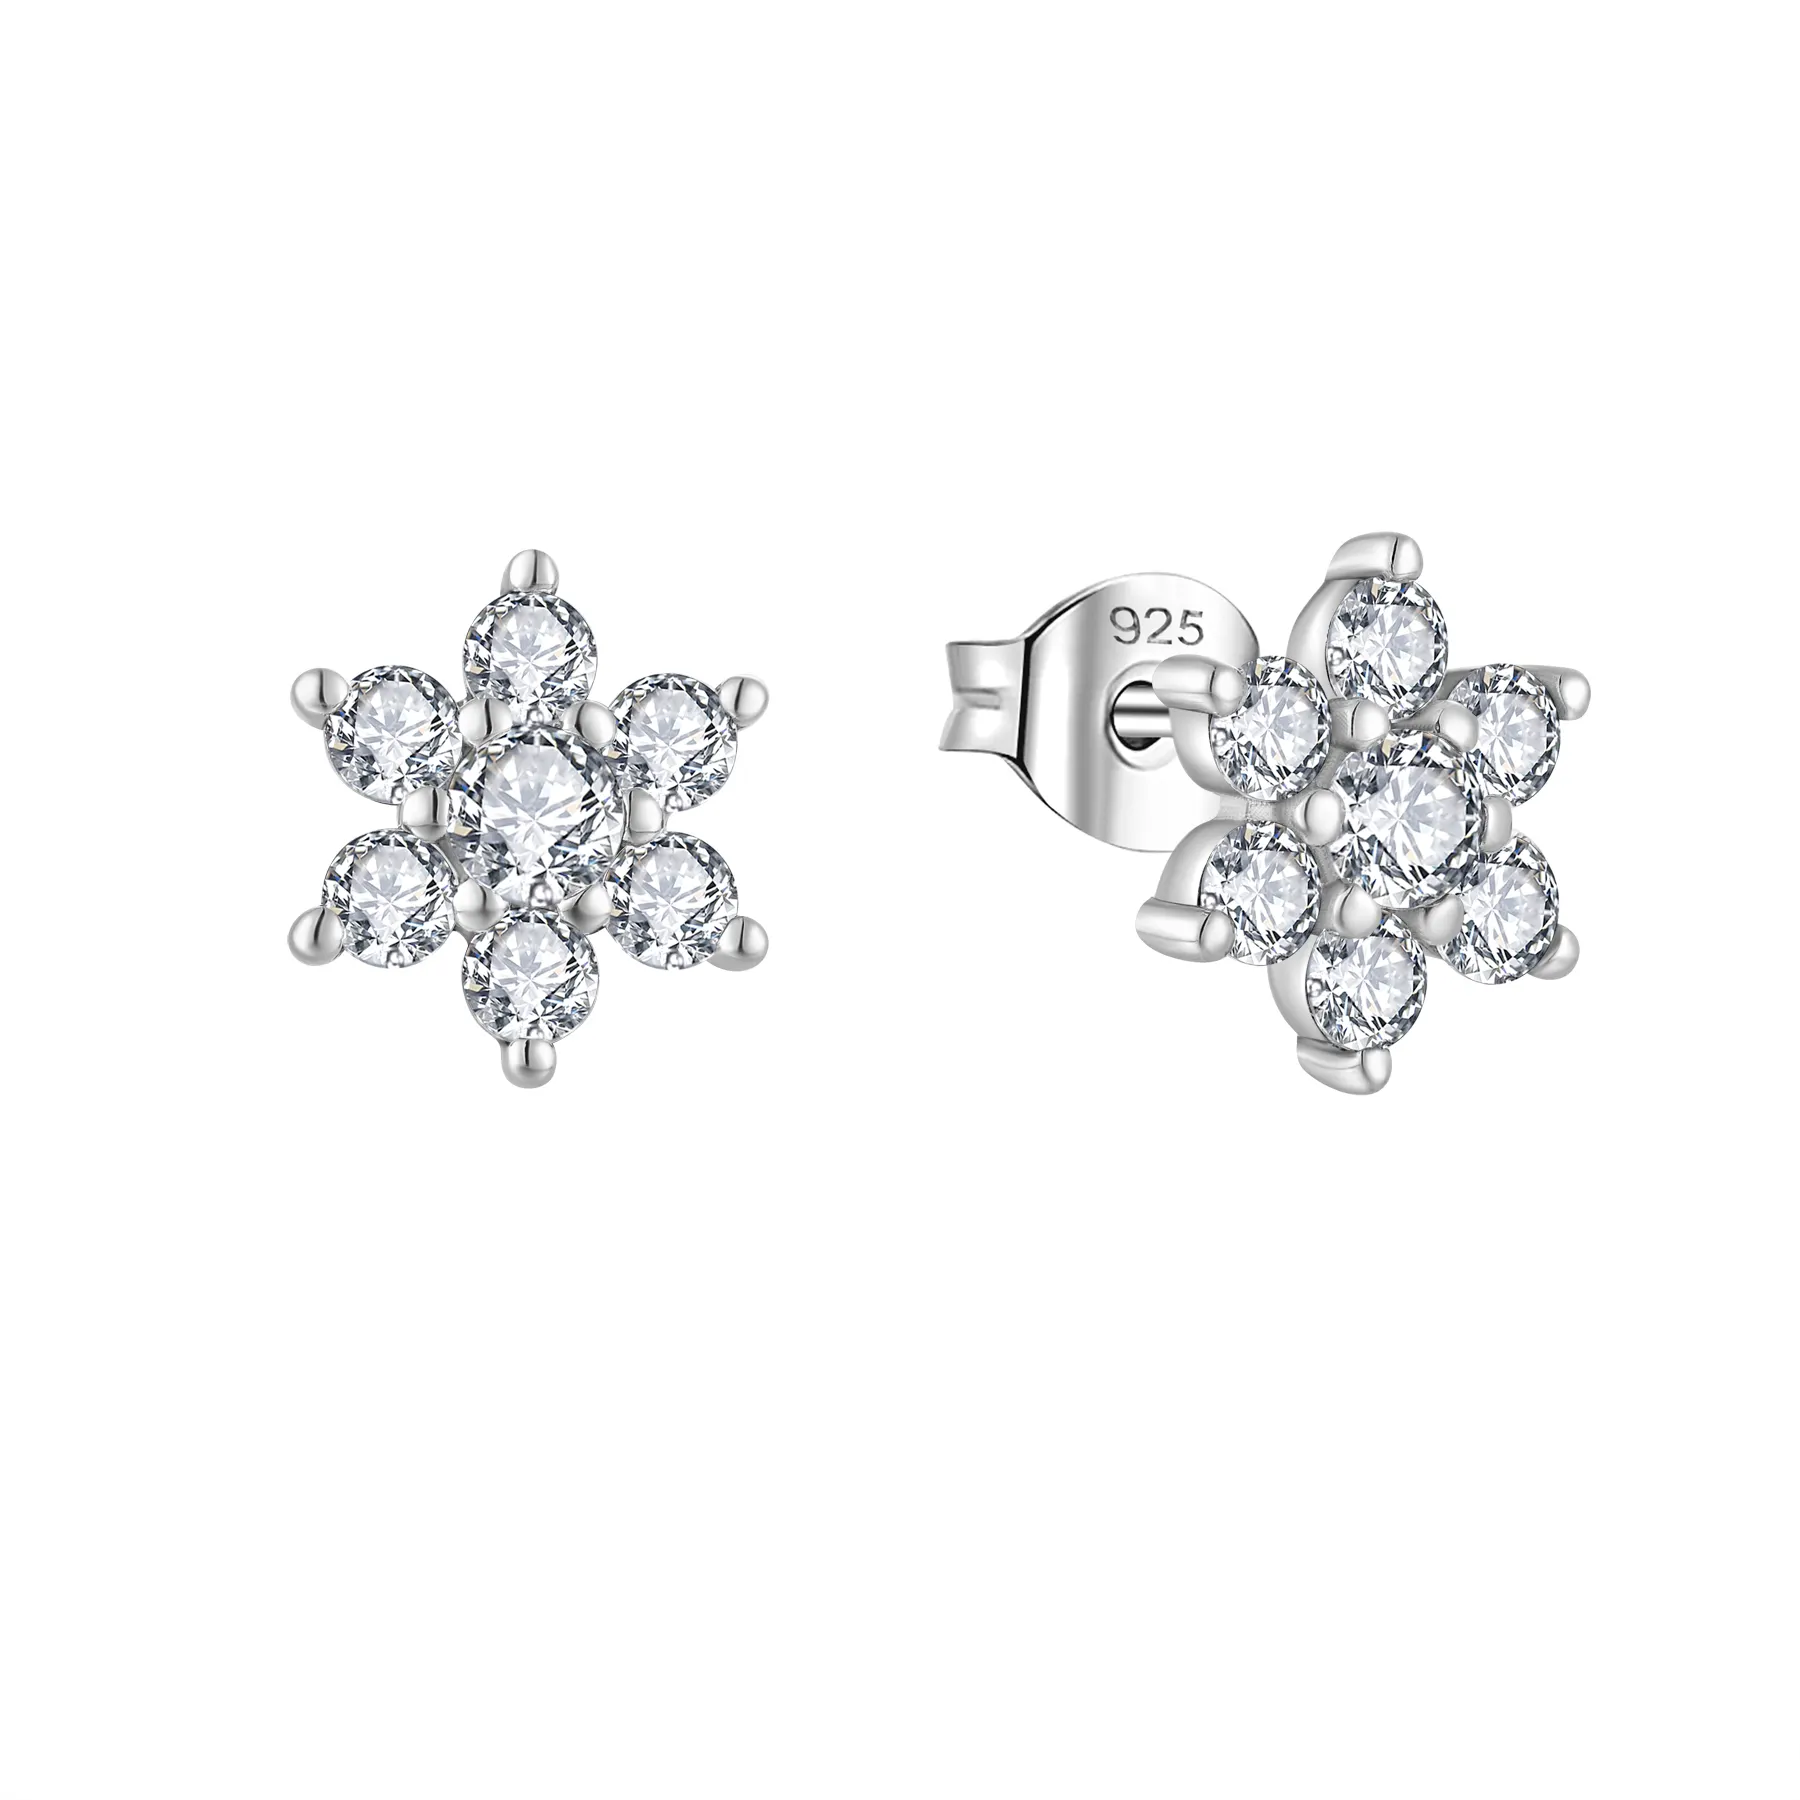 Wholesale Customization OEM Jewelry White CZ Earrings 925 Sterling Silver White Gemstone Flower Shaped Stud Earrings Girls